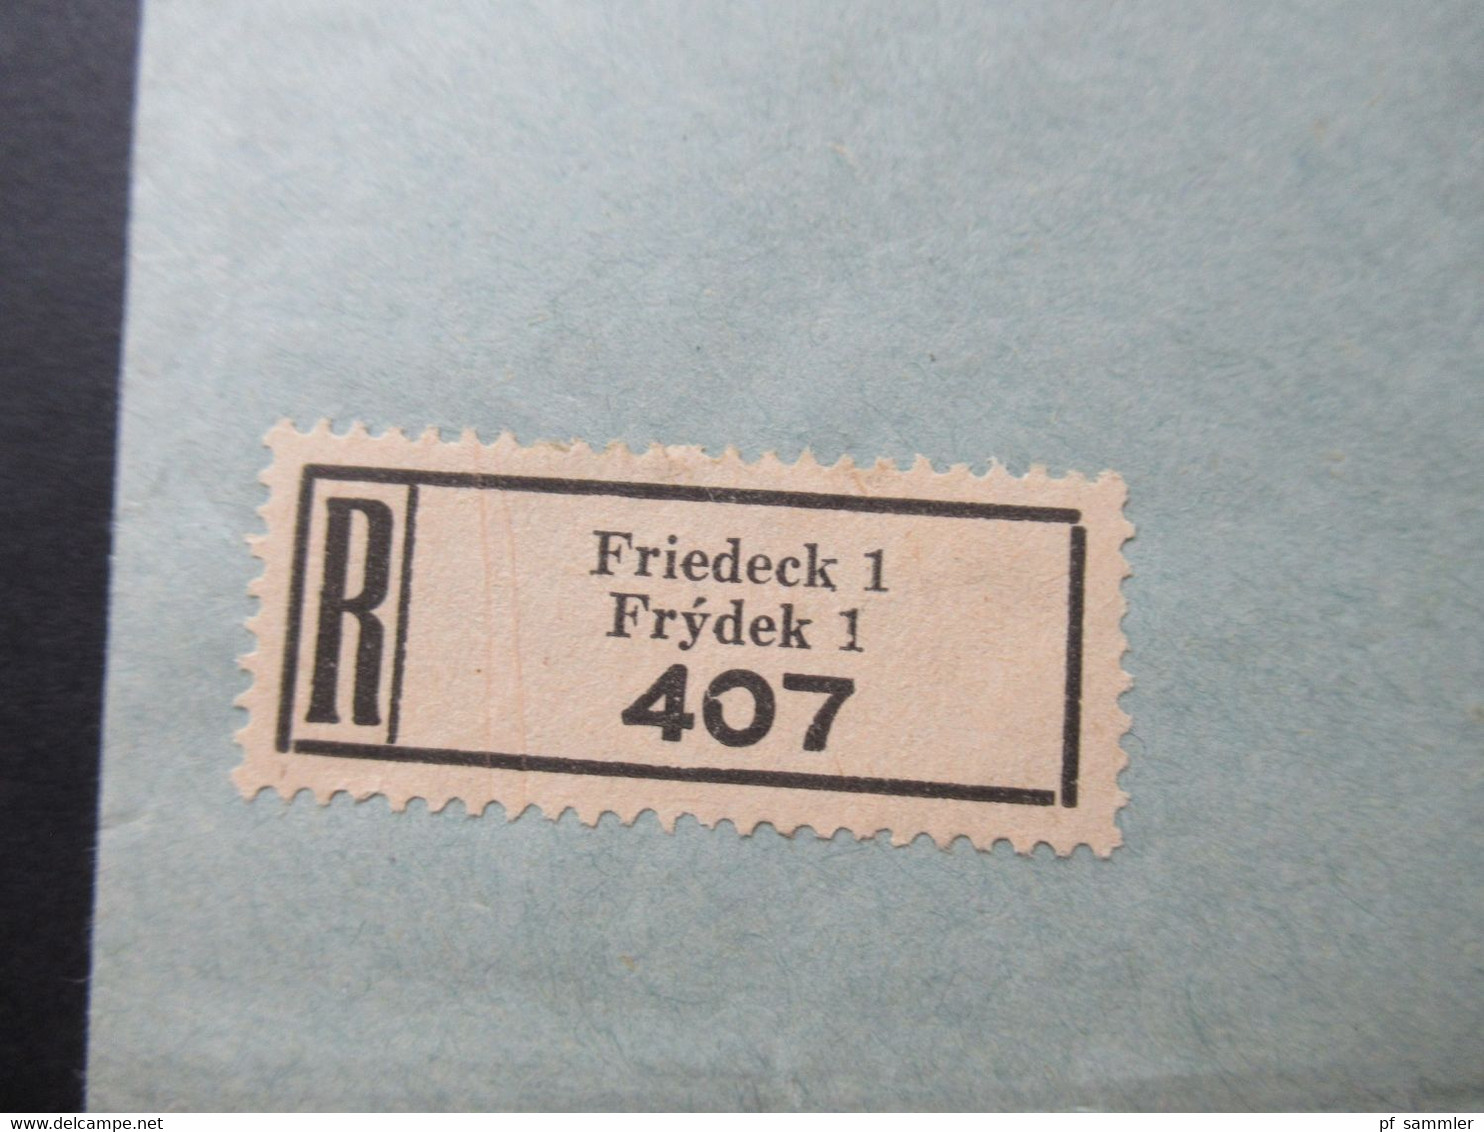 Böhmen Und Mähren 1942 Nr. 29 Und 72 Einschreiben Friedeck 1 / Frydek 1 An Den Reichsforstminister In Berlin - Briefe U. Dokumente